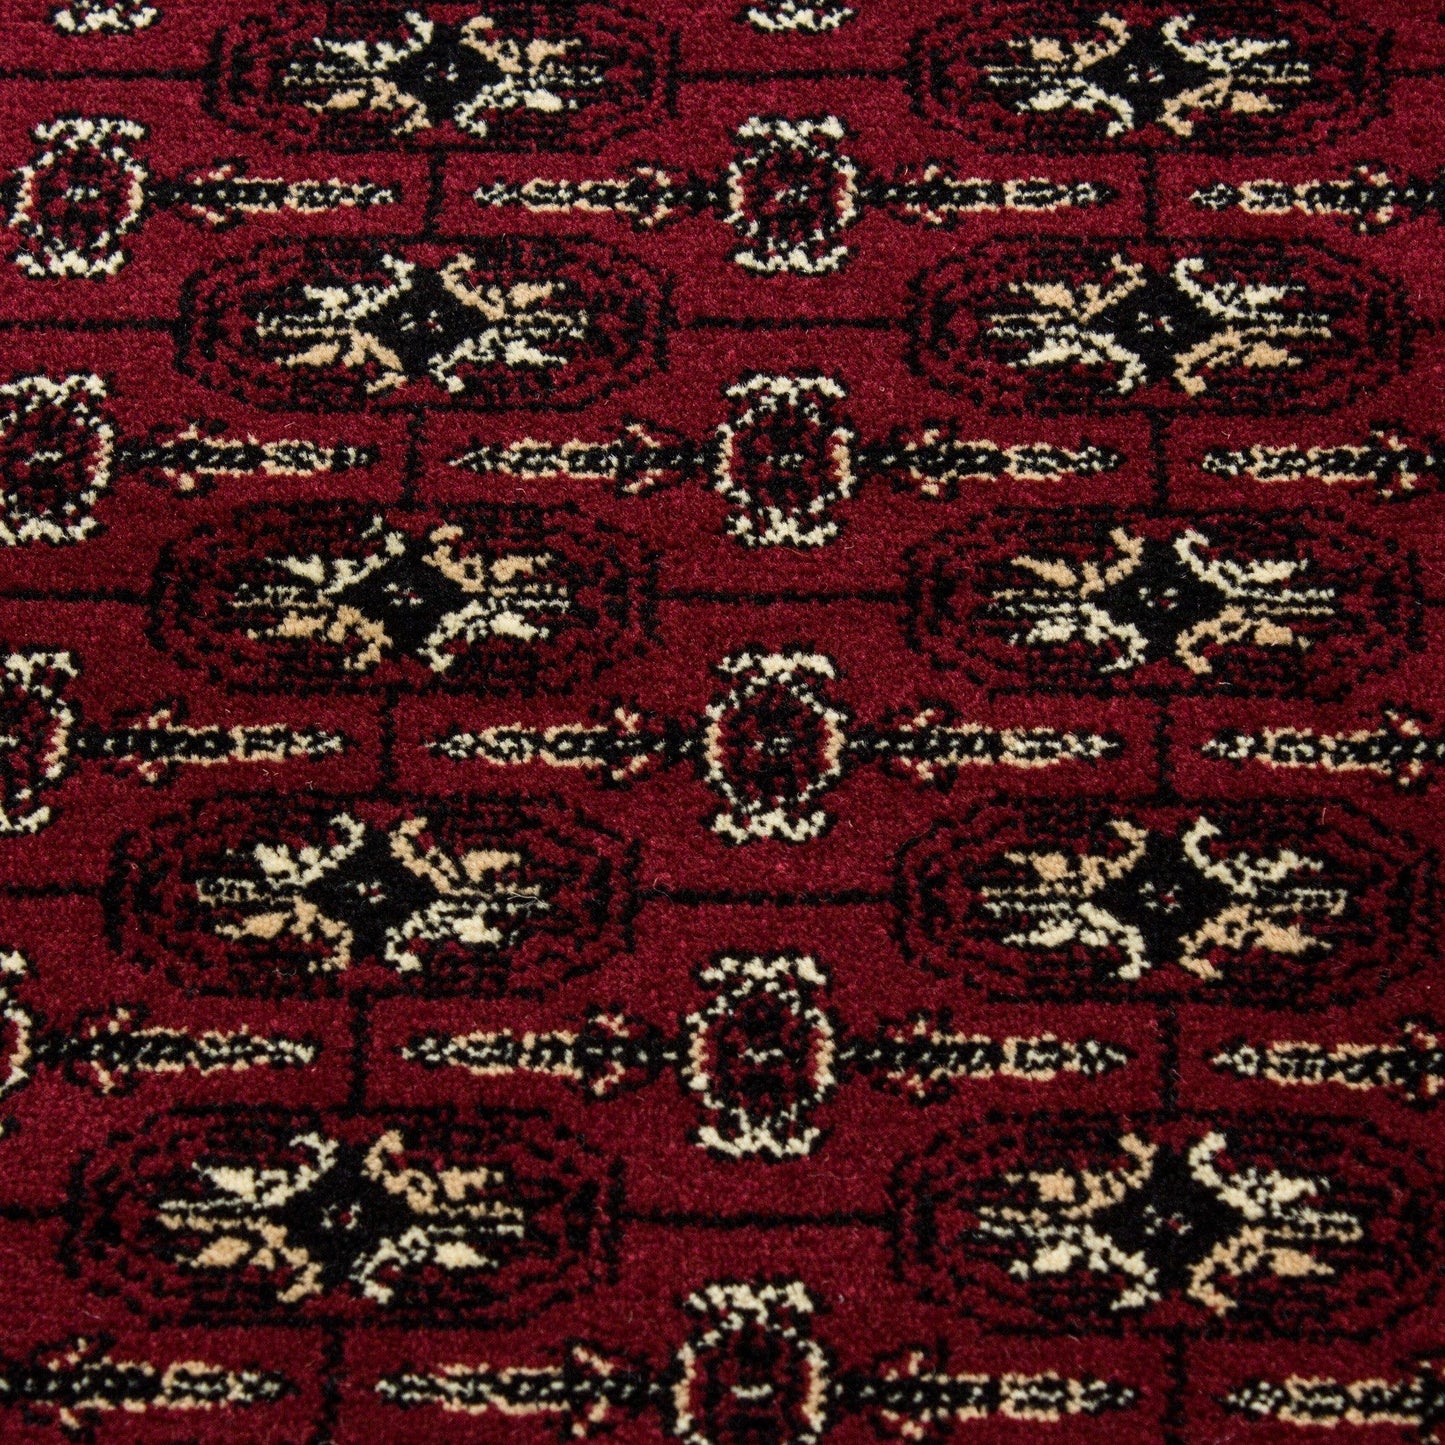 MARRAKESH0351RED Tæppe (120 x 170) - Rød